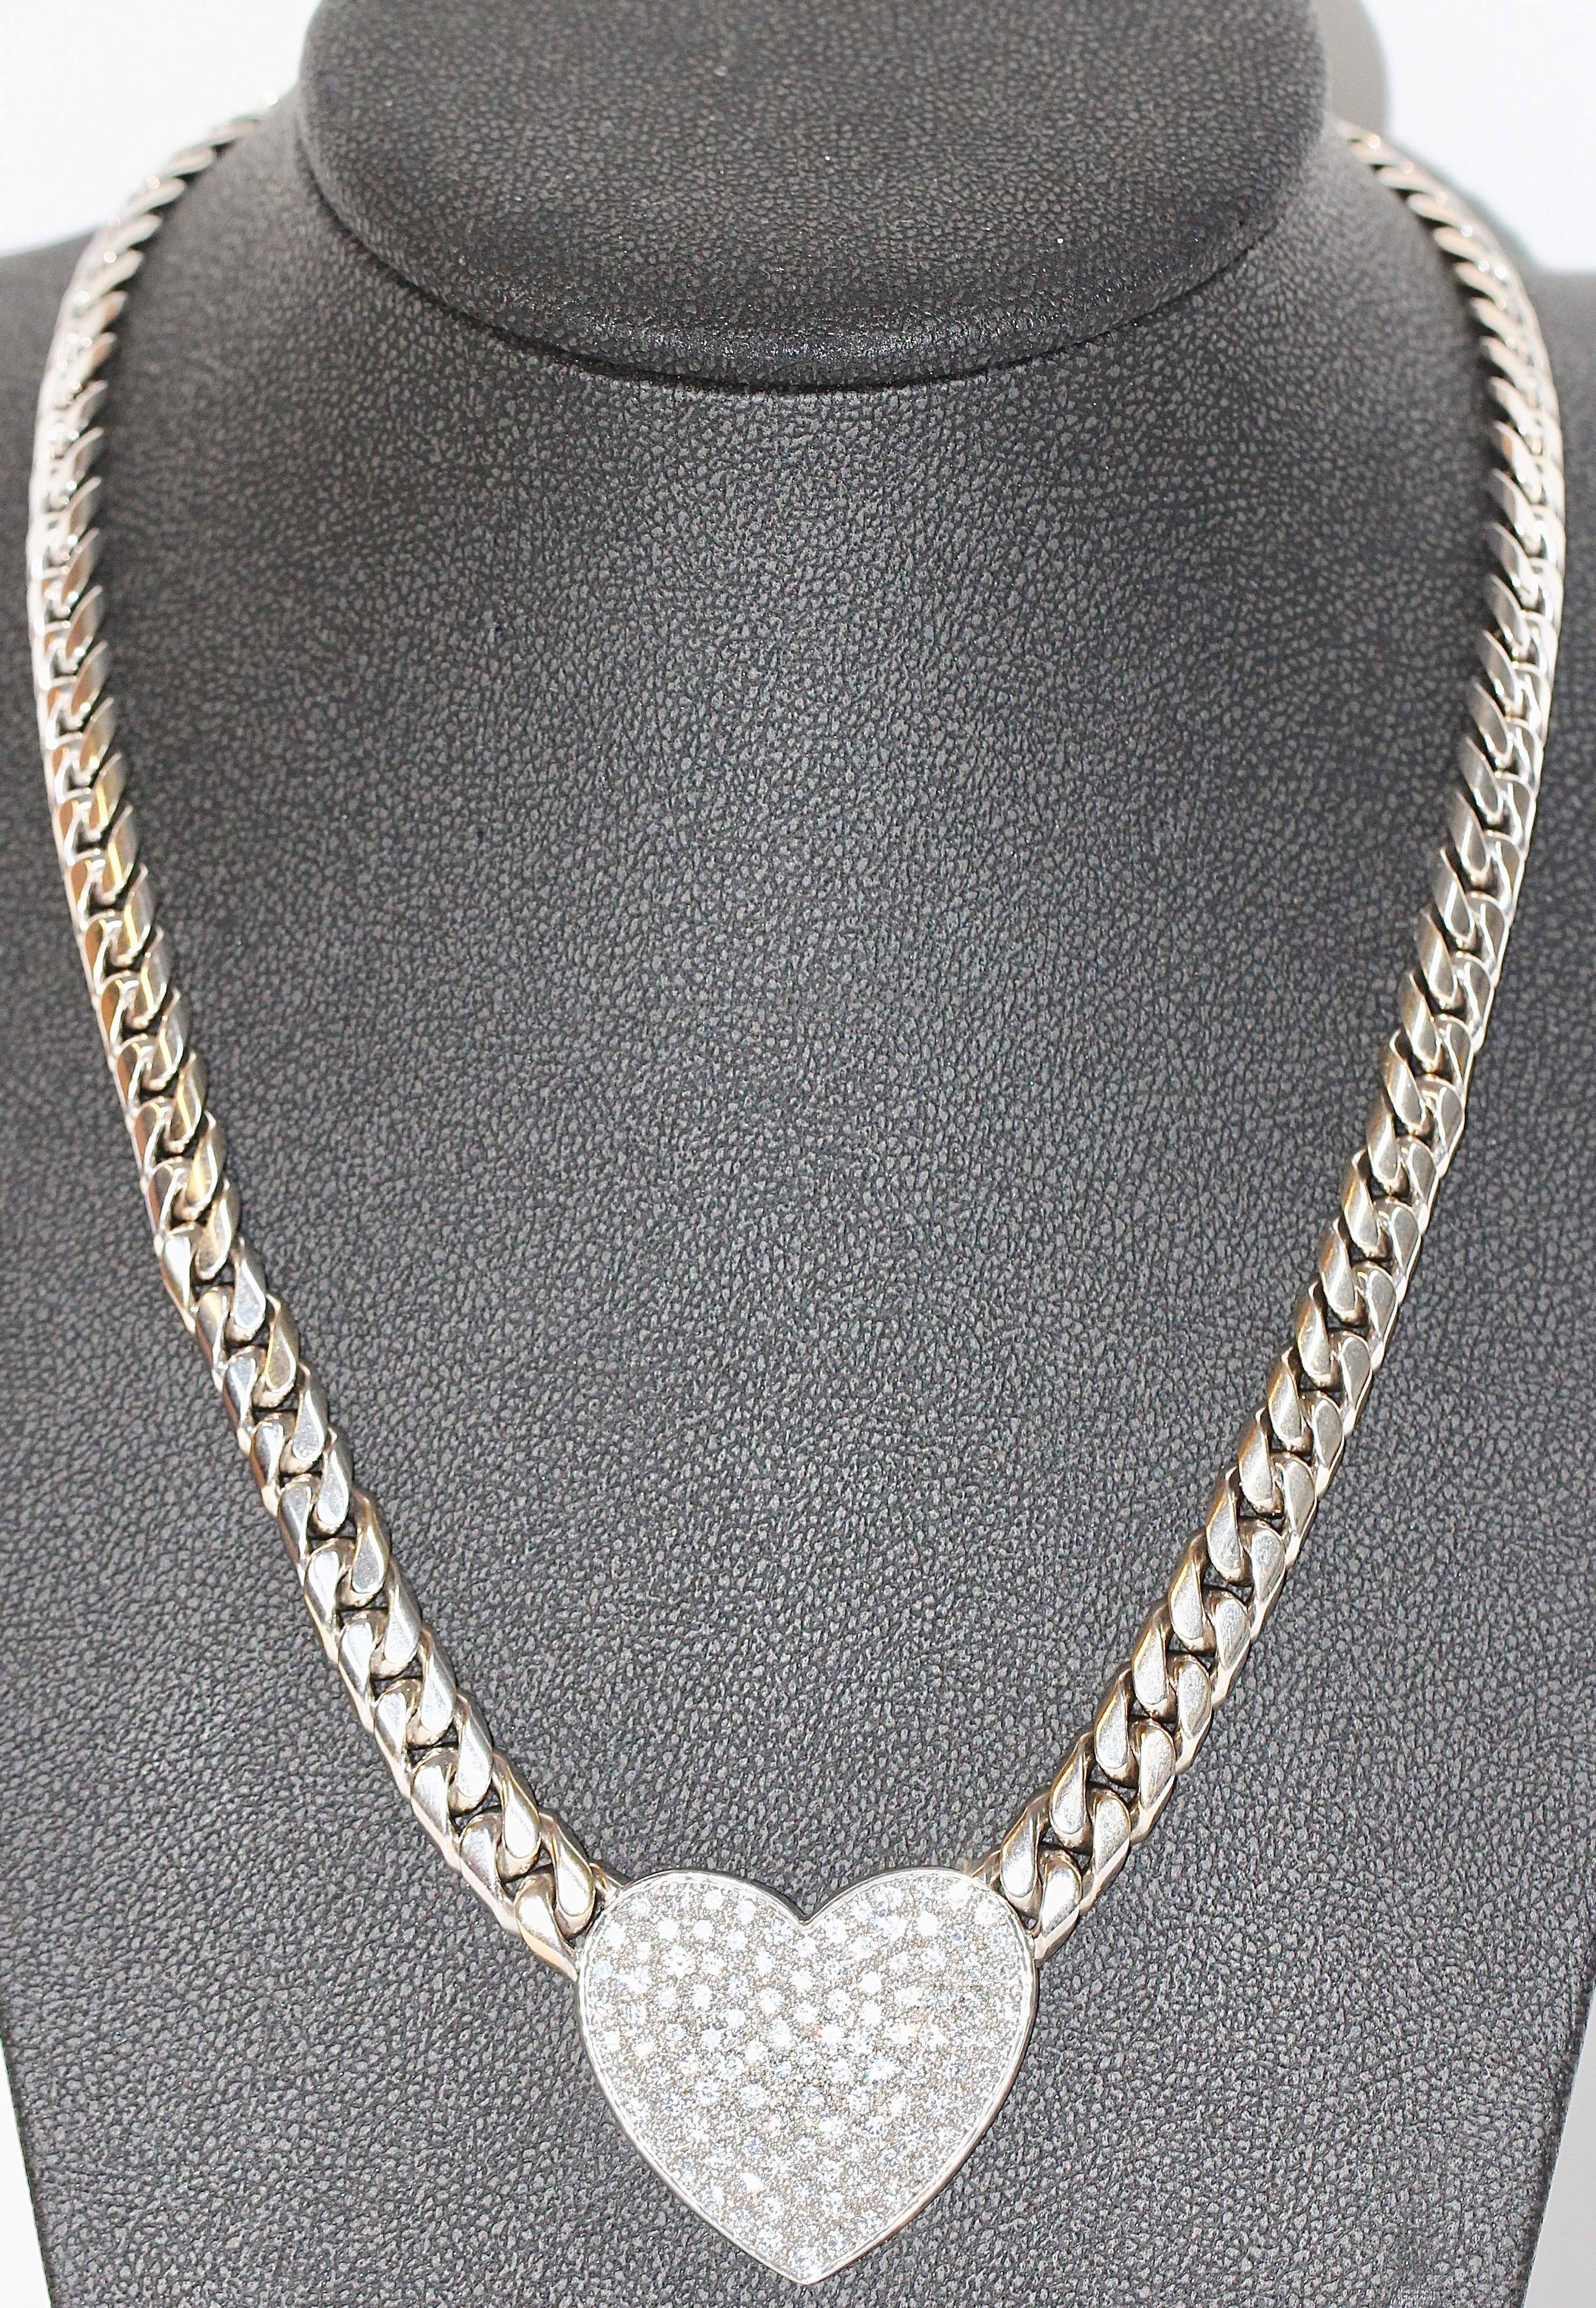 Magnifique collier en or blanc avec 120 diamants.

Collier de luxe en or blanc avec un grand pendentif en forme de cœur avec 120 diamants de qualité supérieure.

Or blanc massif 18K.

Taille du cœur 35,5 x 32 mm.